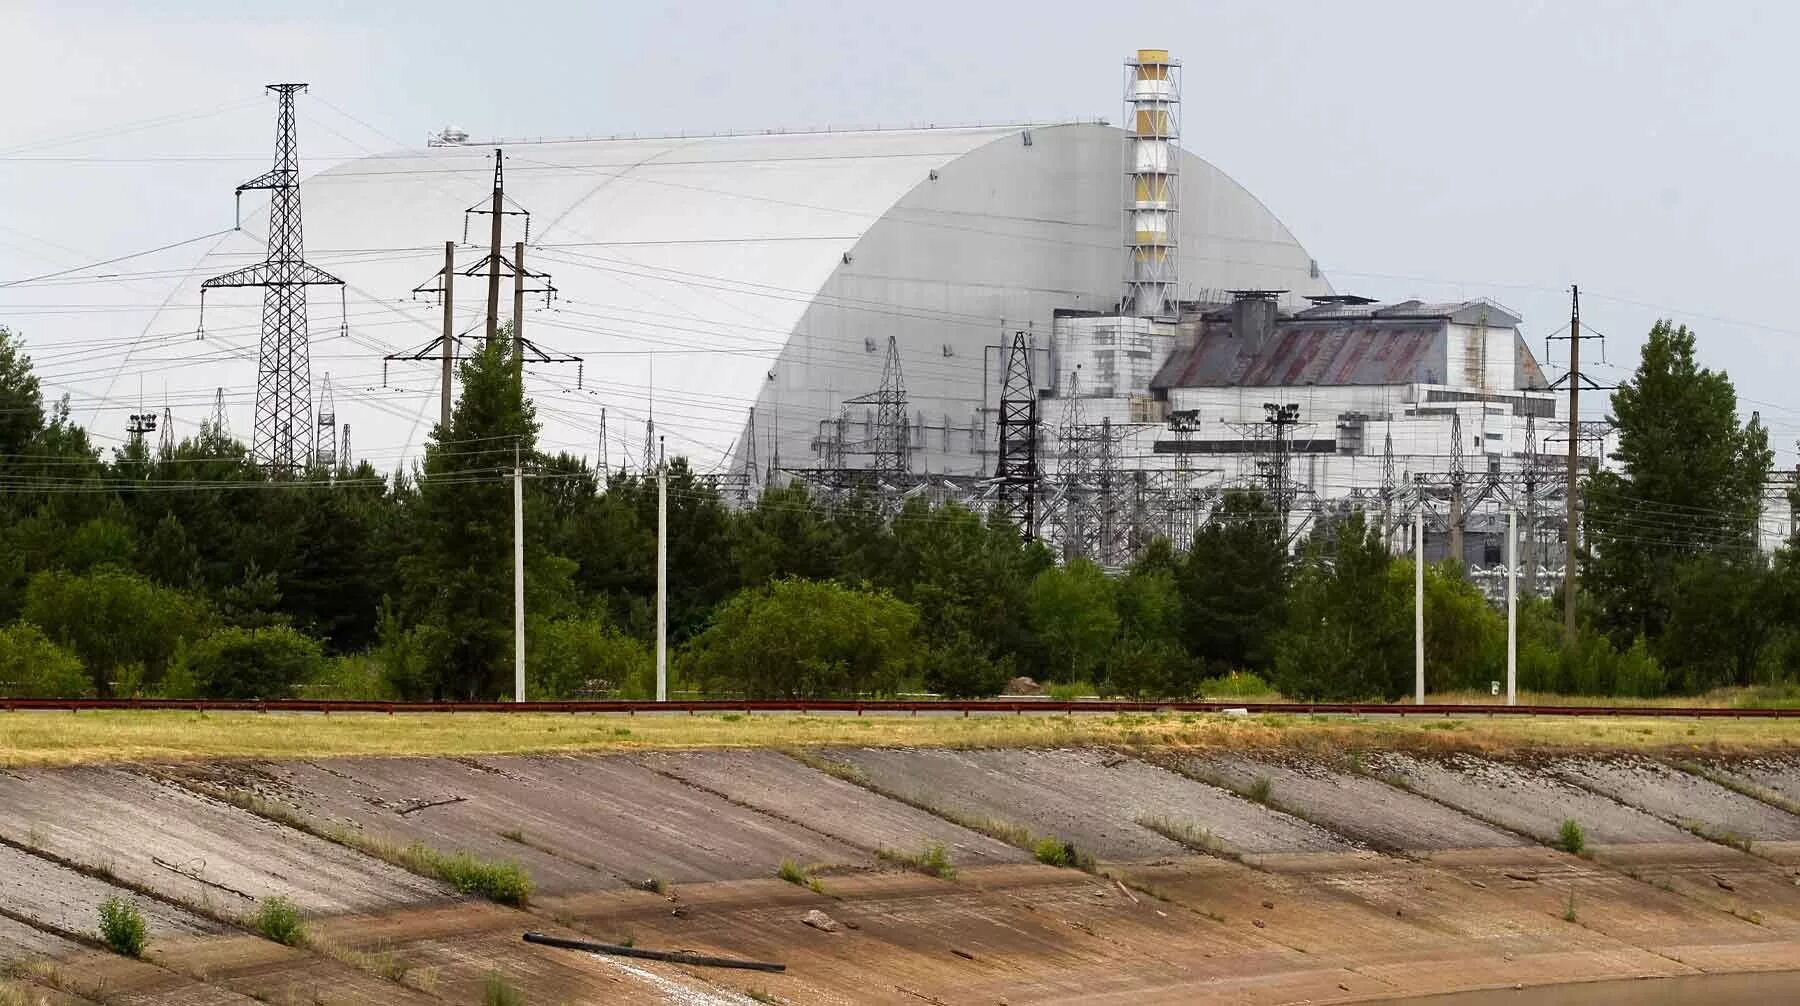 Черно аэс. АЭС Украины Чернобыль. Чернобыль 4 энергоблок саркофаг. Чернобыльская станция АЭС. Атомная электростанция Чернобыль сейчас.